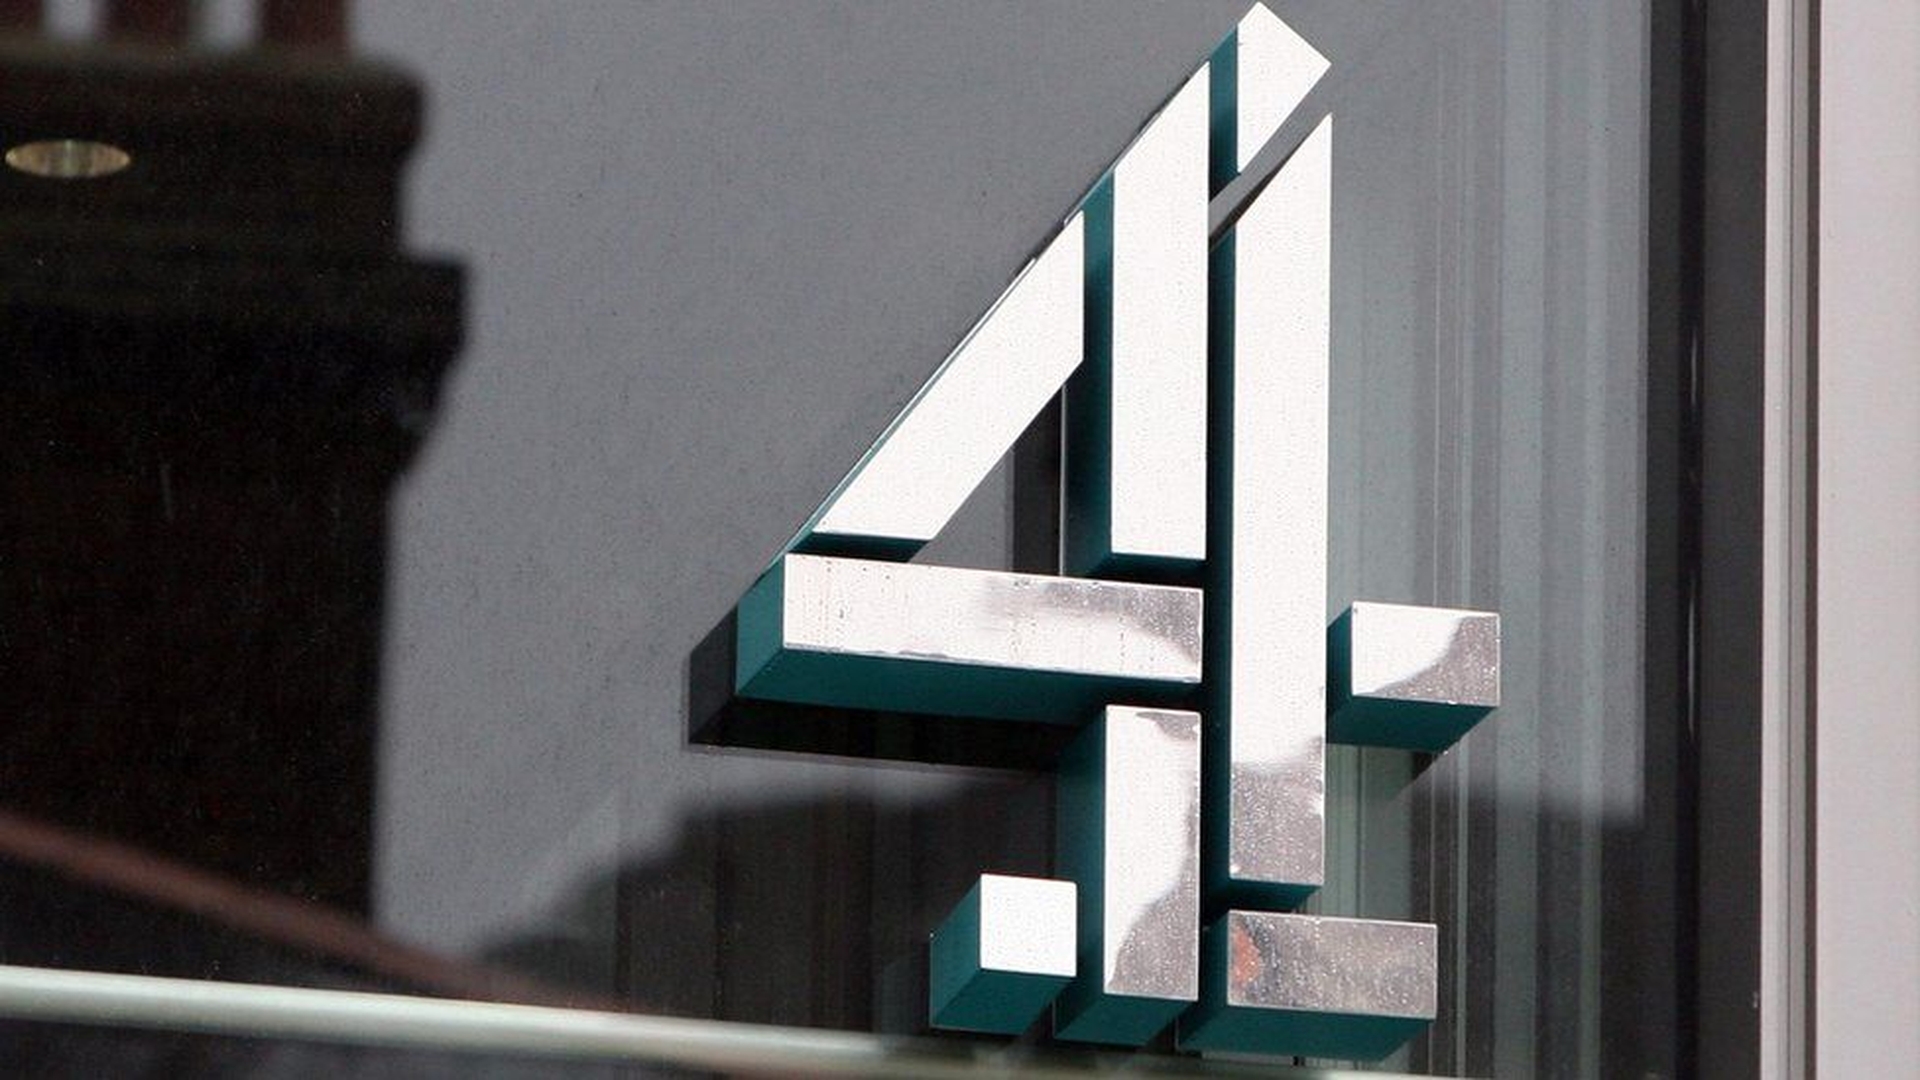 Der britische Channel 4 wird Shows auf Youtube veröffentlichen